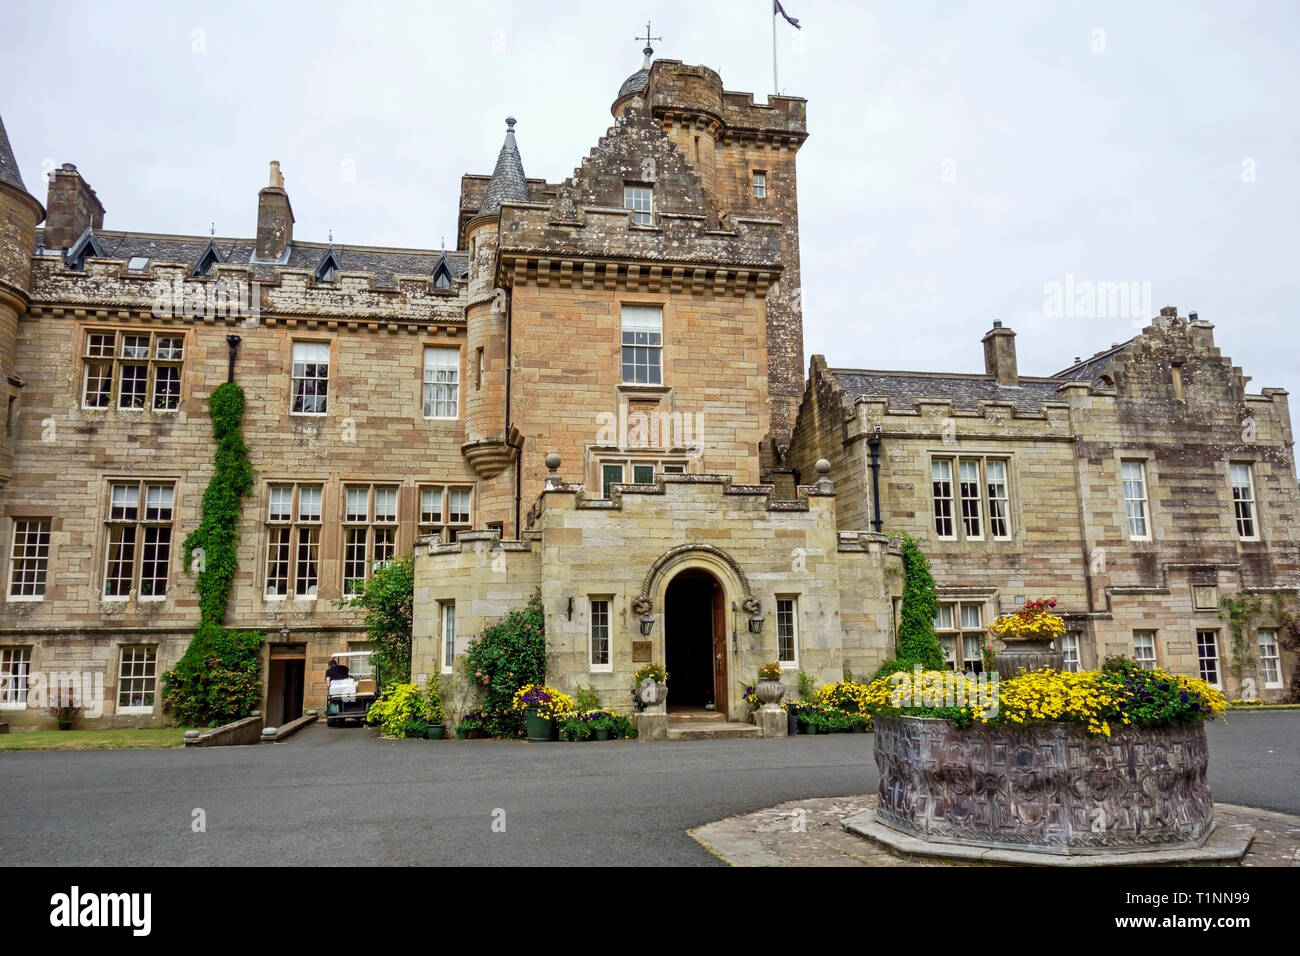 Luxuriöses 5-Sterne-Hotel Glenapp Castle Hotel in der Nähe von Ballantrae, South Ayrshire, Schottland, Großbritannien. Stockfoto